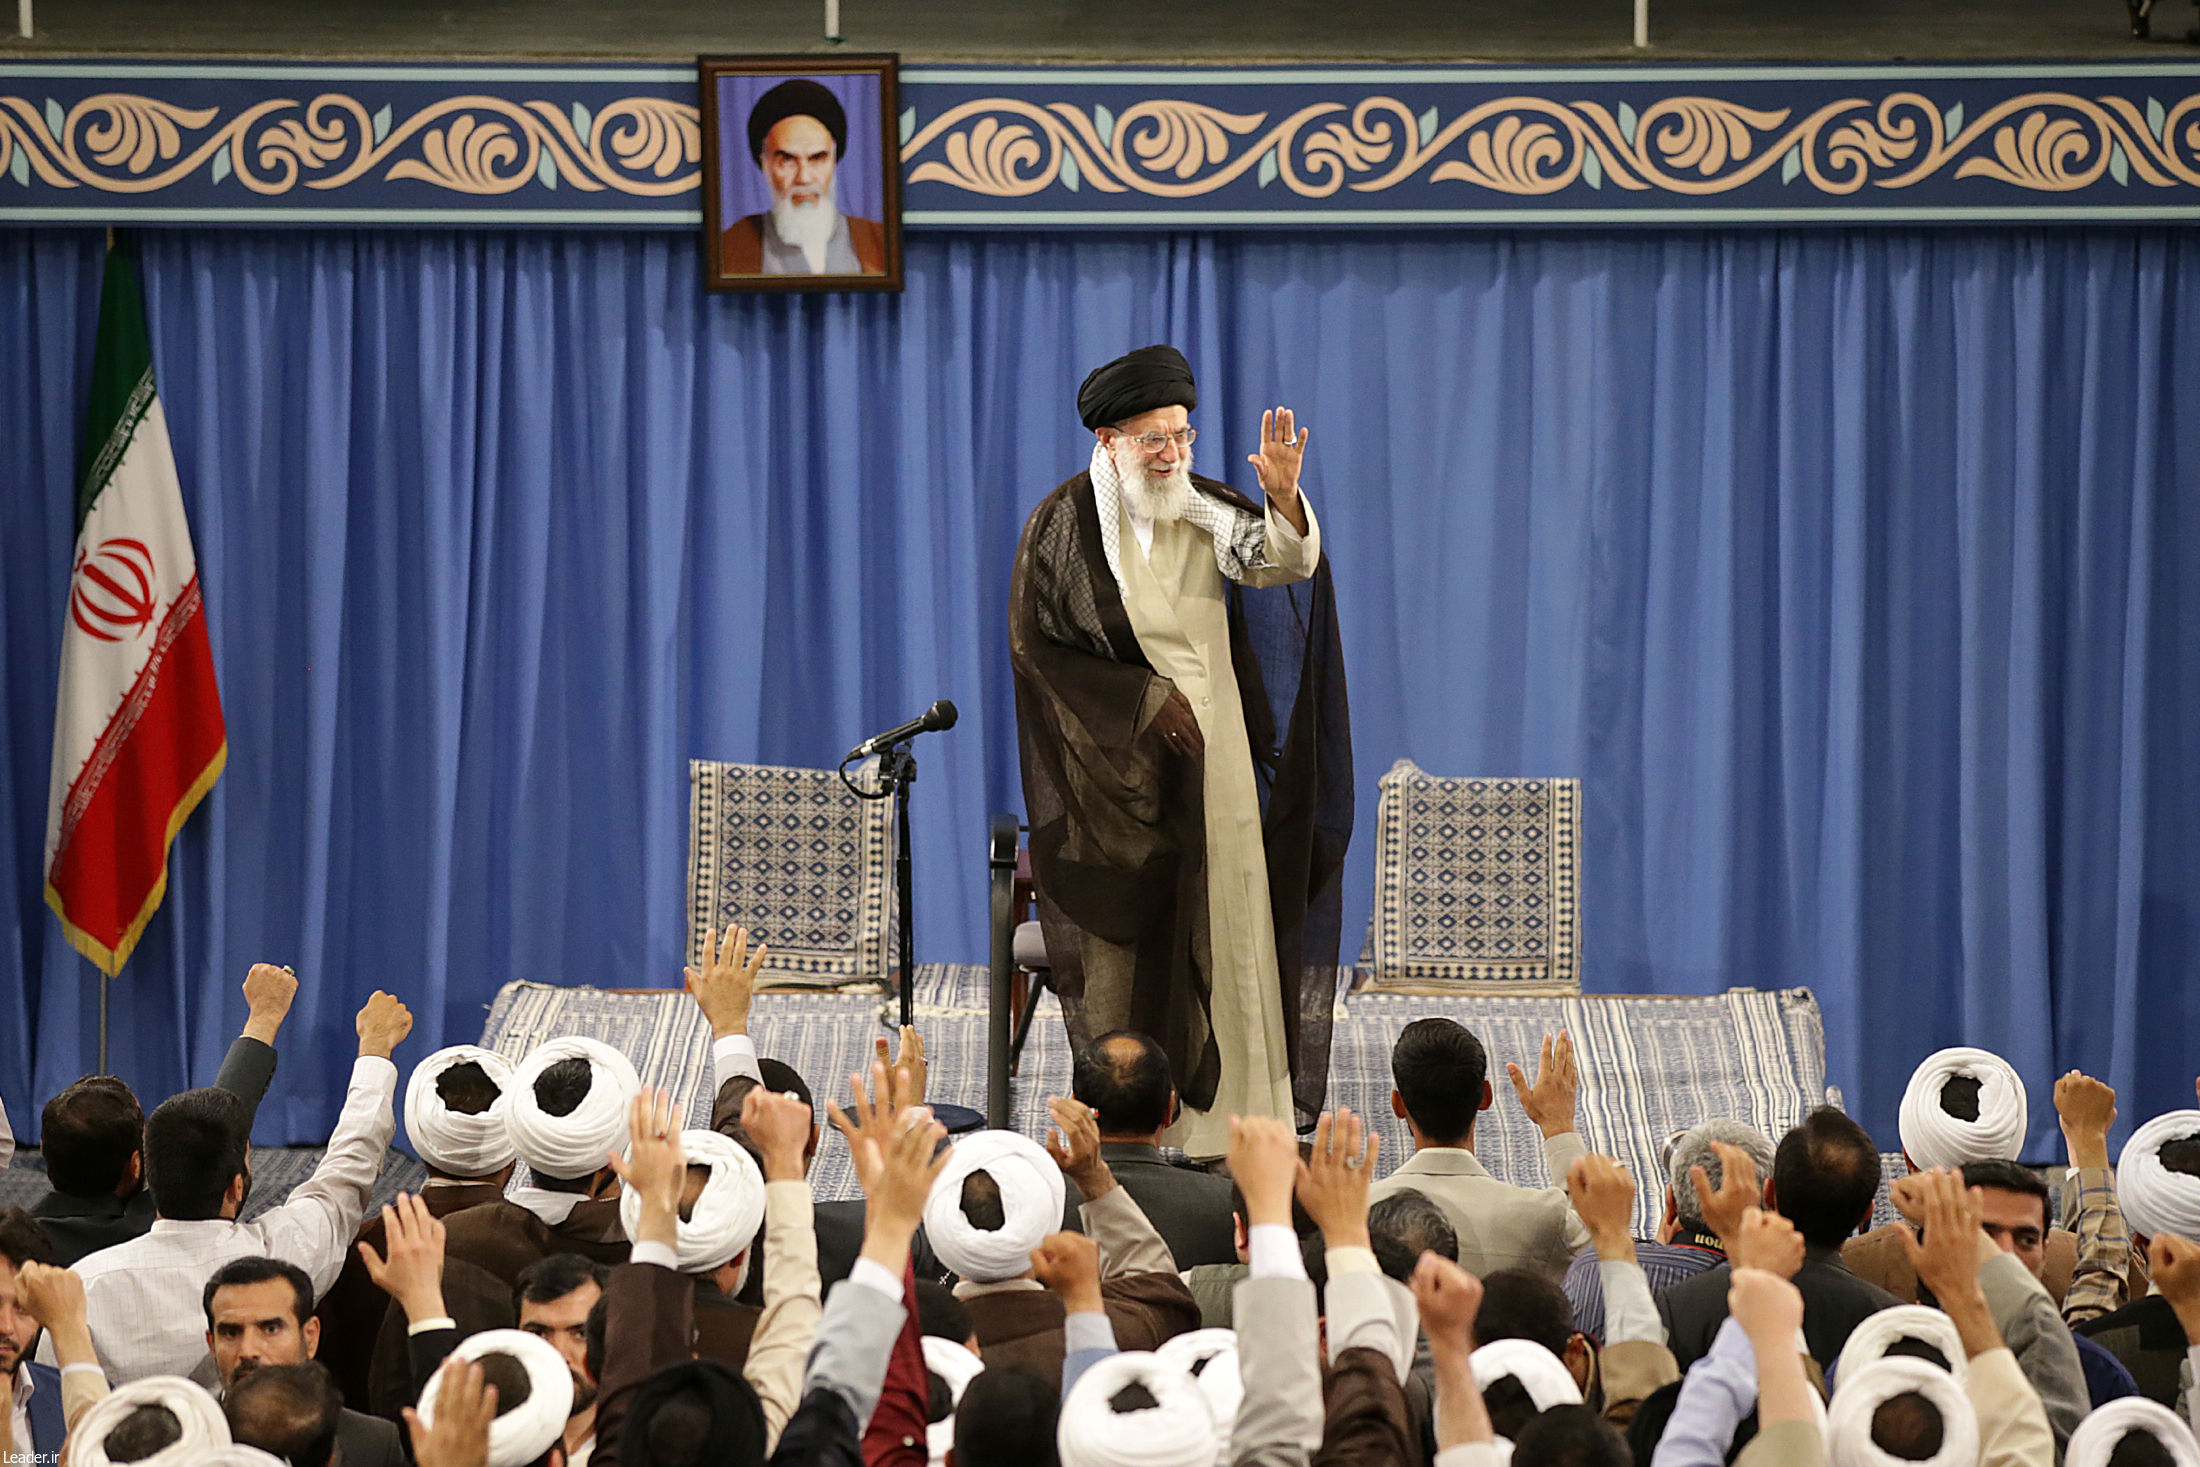 Public interest in religious concepts have increased: Imam Khamenei